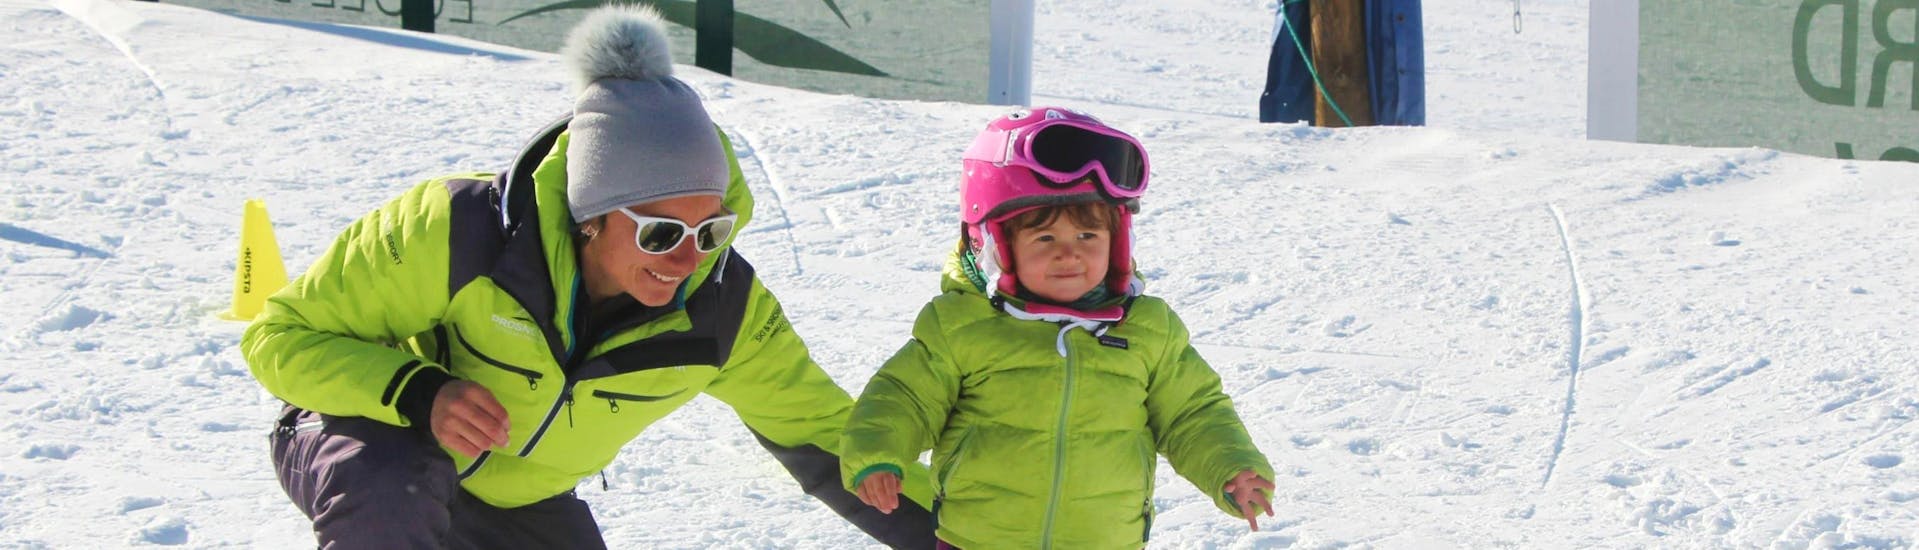 Un enfant apprend à skier pendant son Cours de ski Enfants "Petits Ours" (3-4 ans) - Max 6 par groupe avec Prosneige Alpe d'Huez.